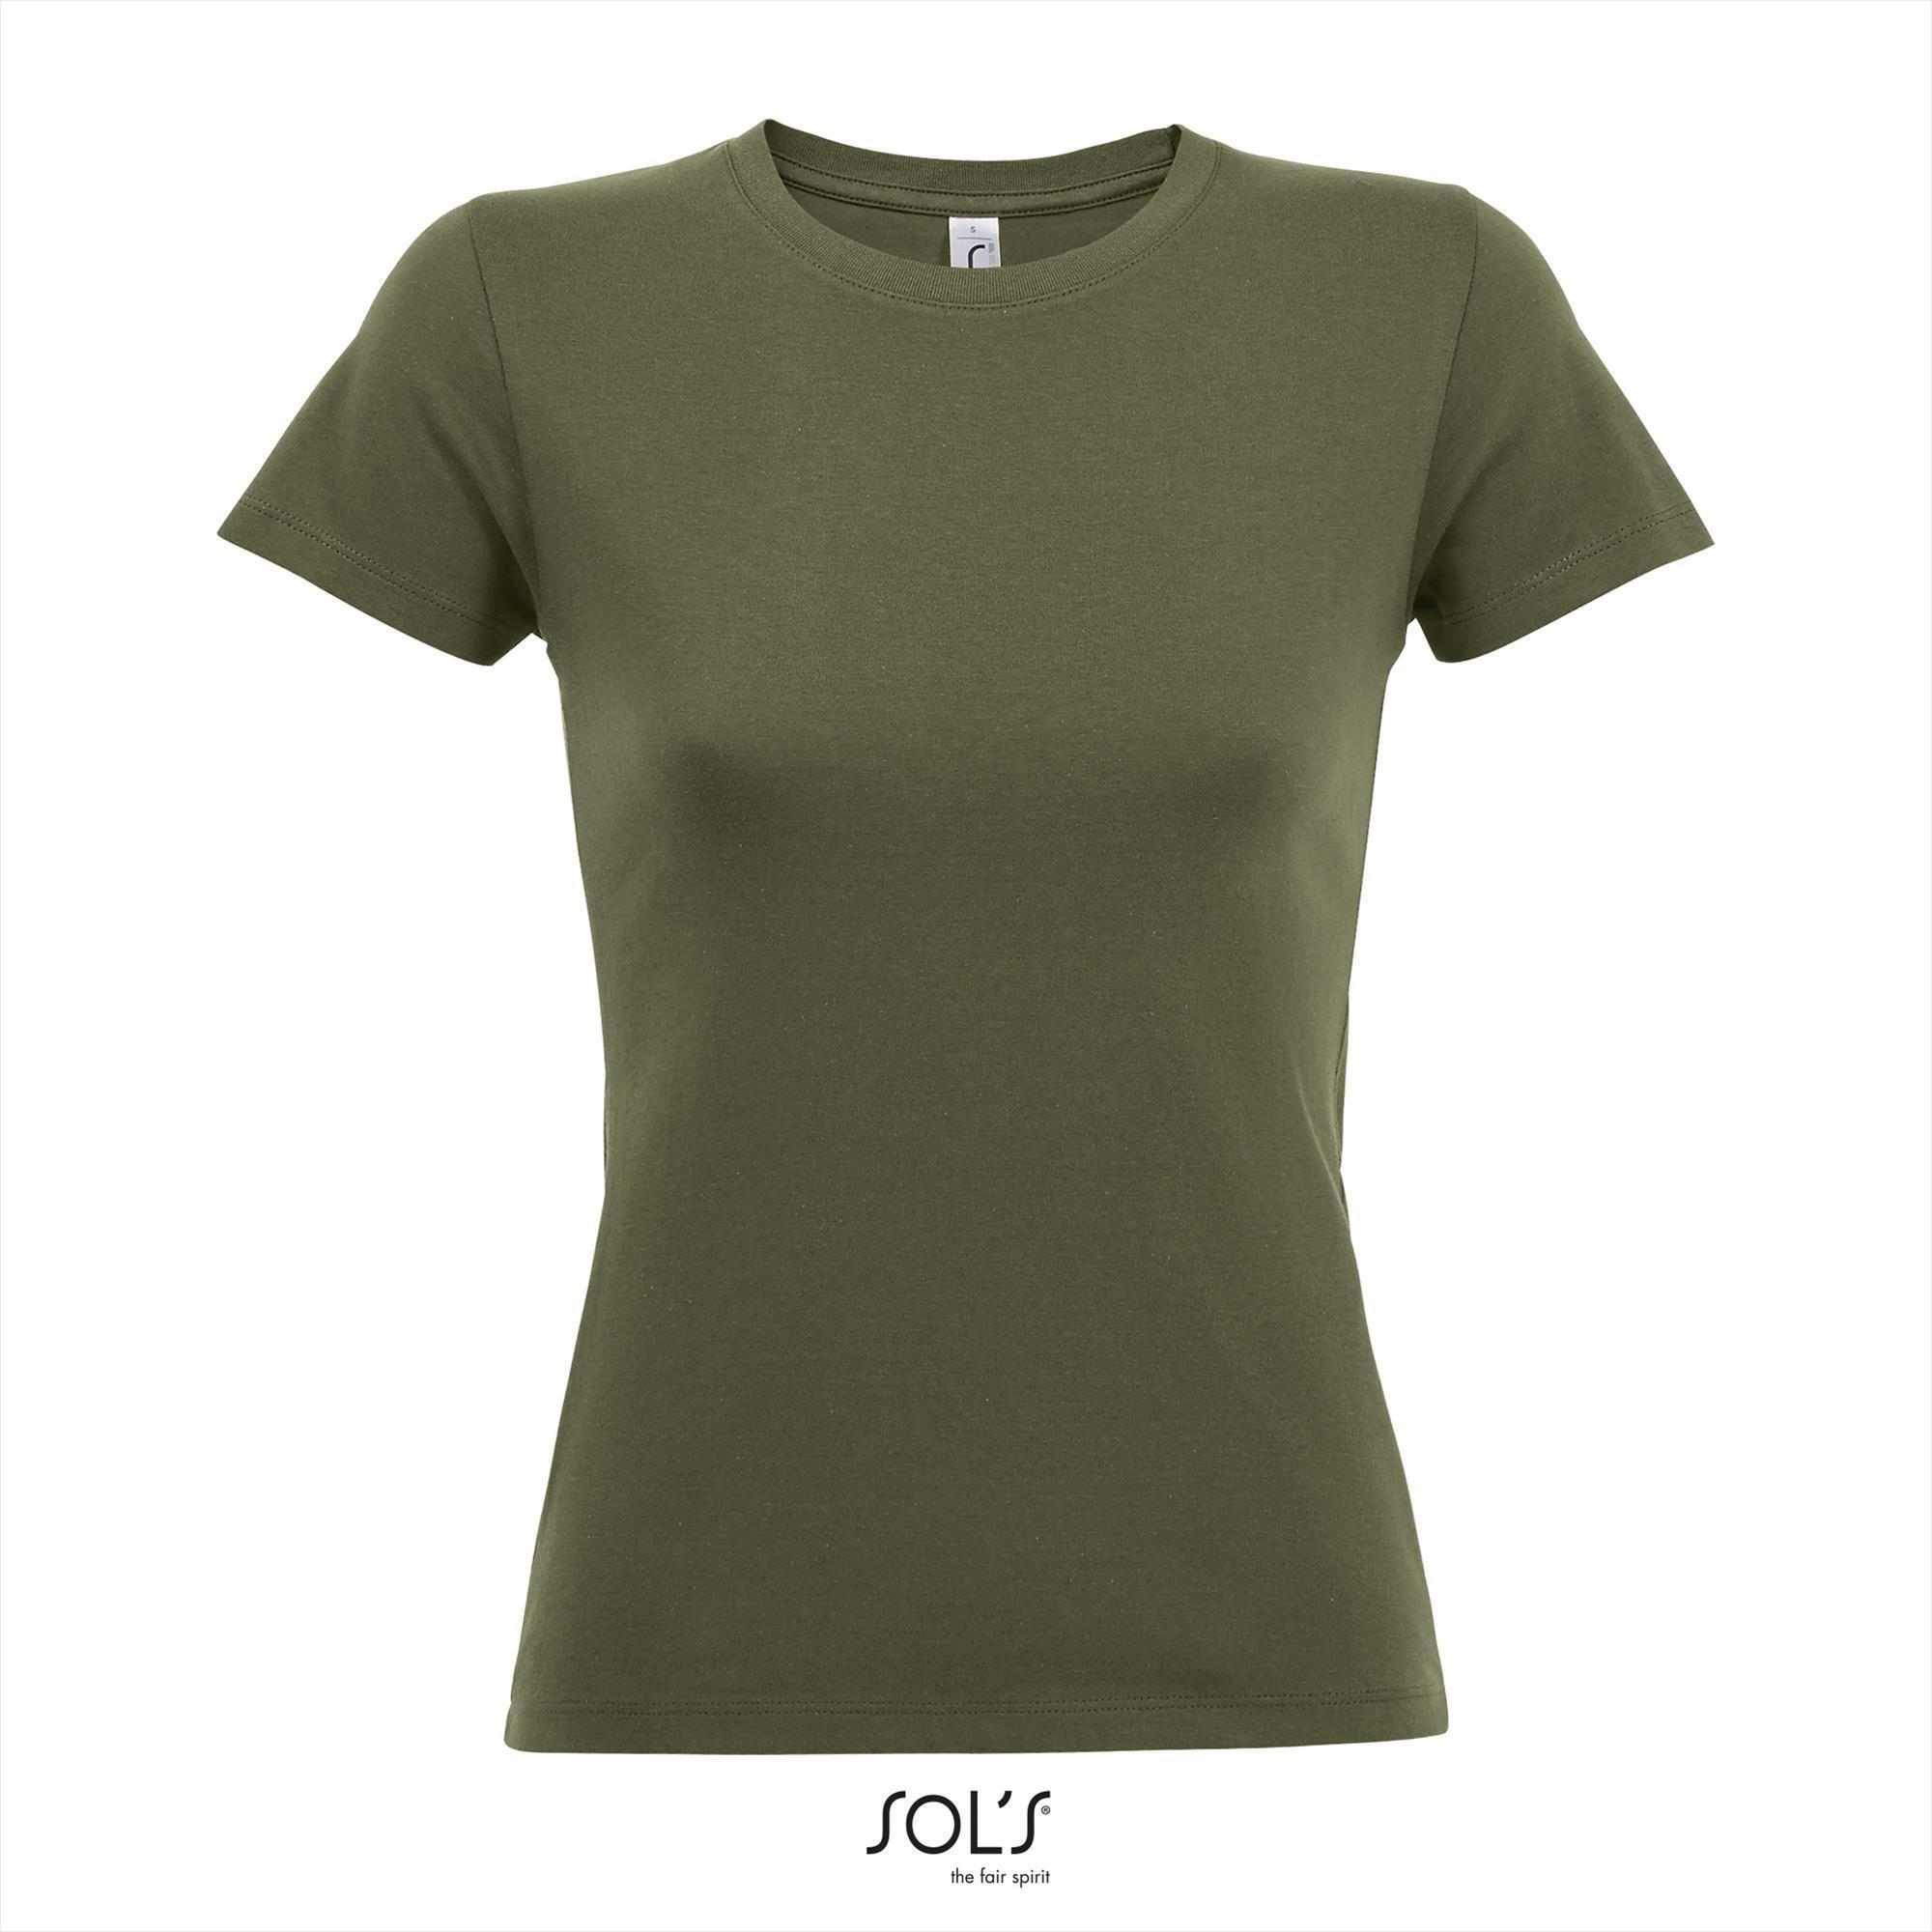 Dames T-shirt met een ronde hals leger kleur army groen soldaten groen